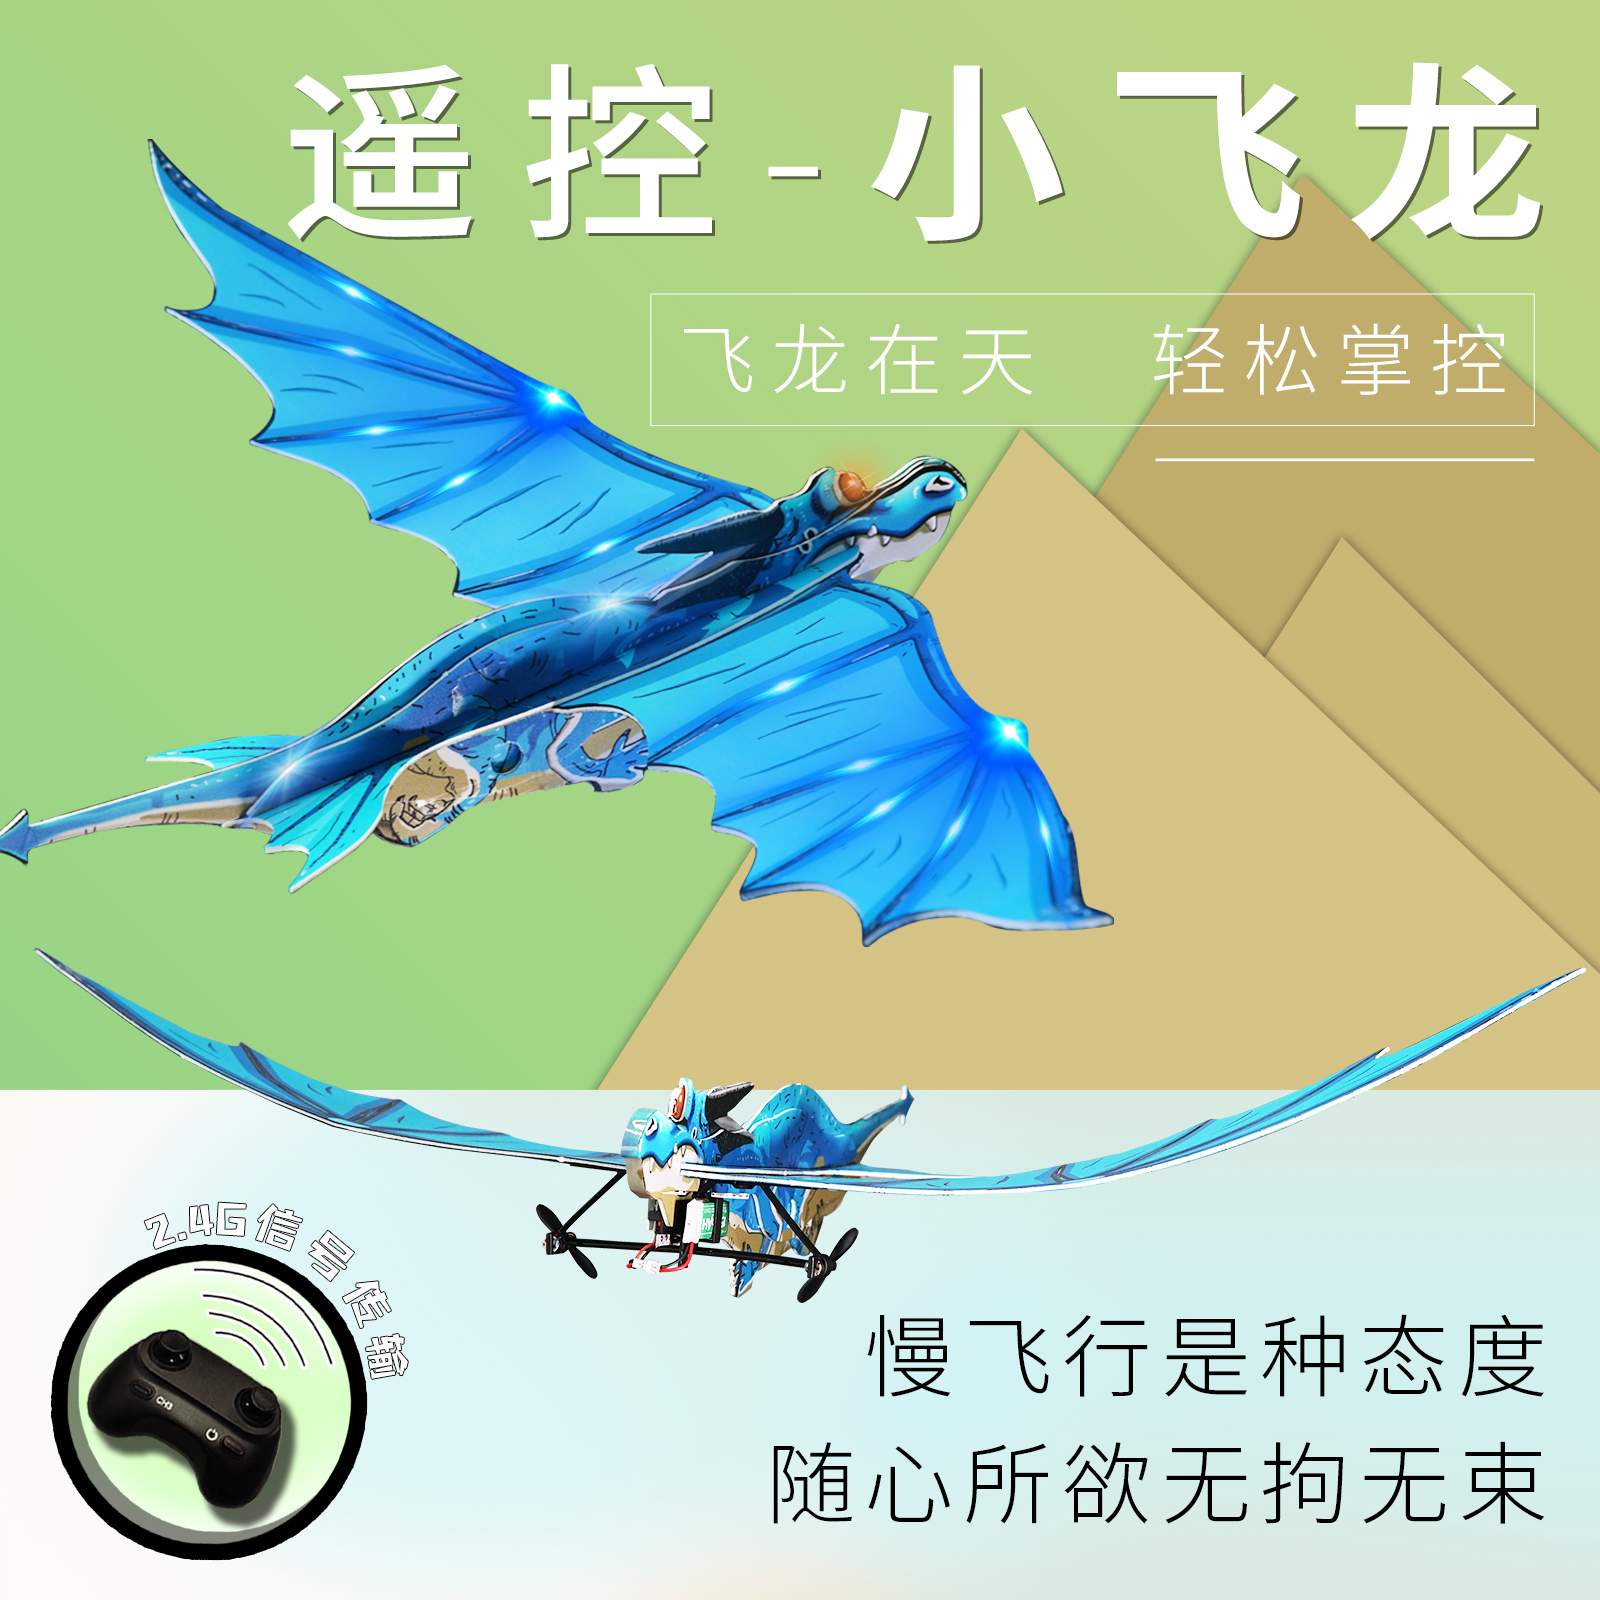 遥控飞机小飞龙航模固定翼滑翔男孩益智电动儿童玩具拼装折纸飞机